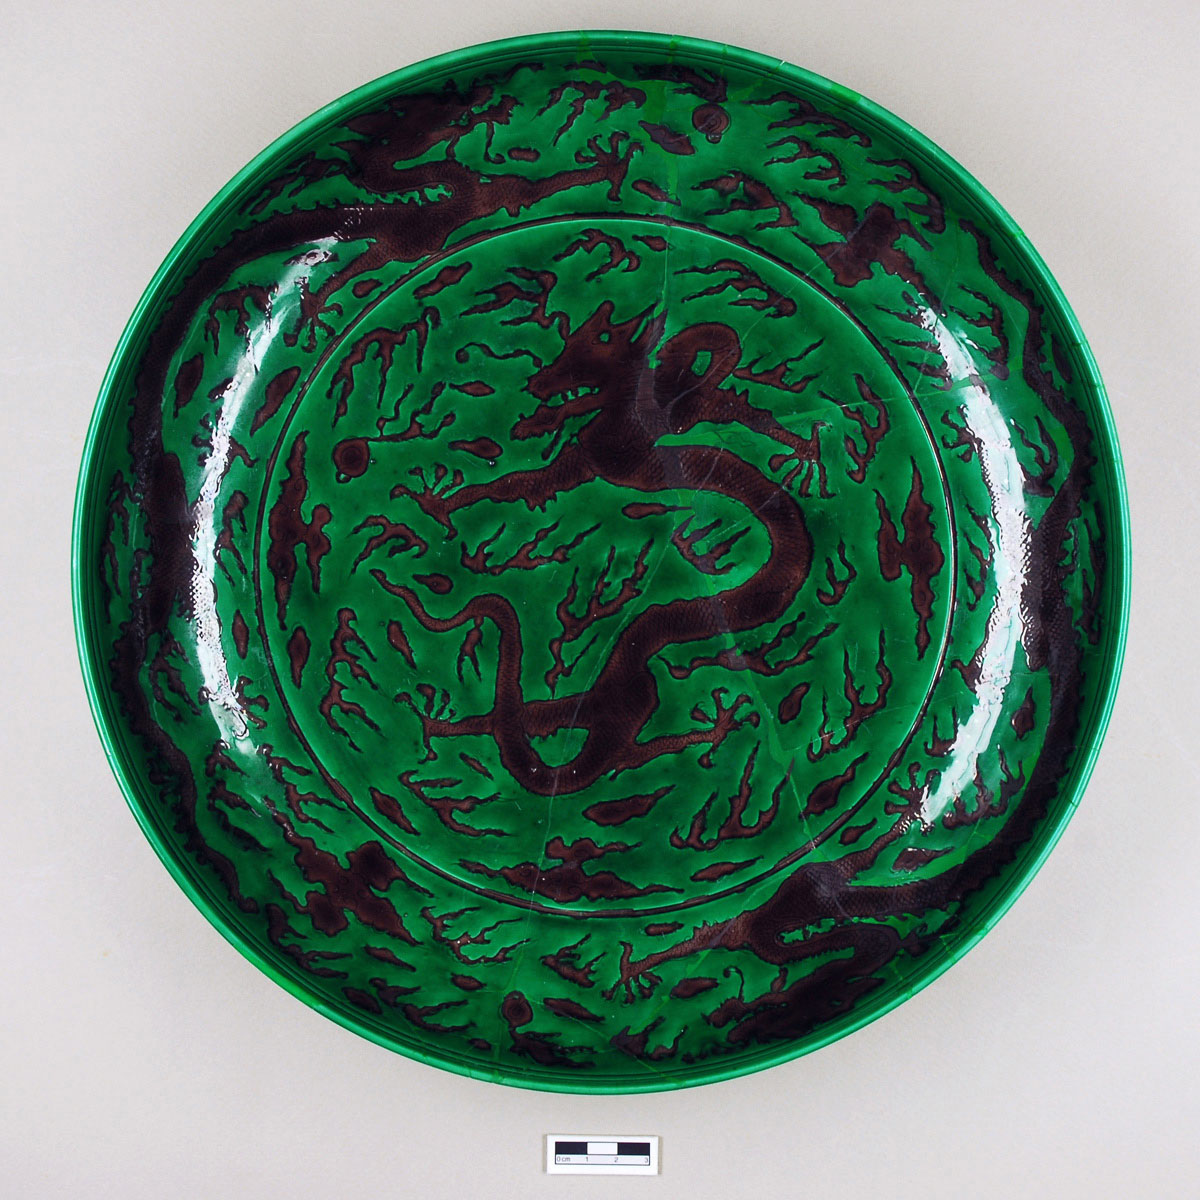 Εικ. 14. Πορσελάνινο πιάτο από την Κινέζικη Συλλογή του Μουσείου Μπενάκη (αρ. ευρ.: 2857), διάμ.: 31,3 εκ. Μετά την ολοκλήρωση των εργασιών συντήρησης (φωτ. Μουσείο Μπενάκη).